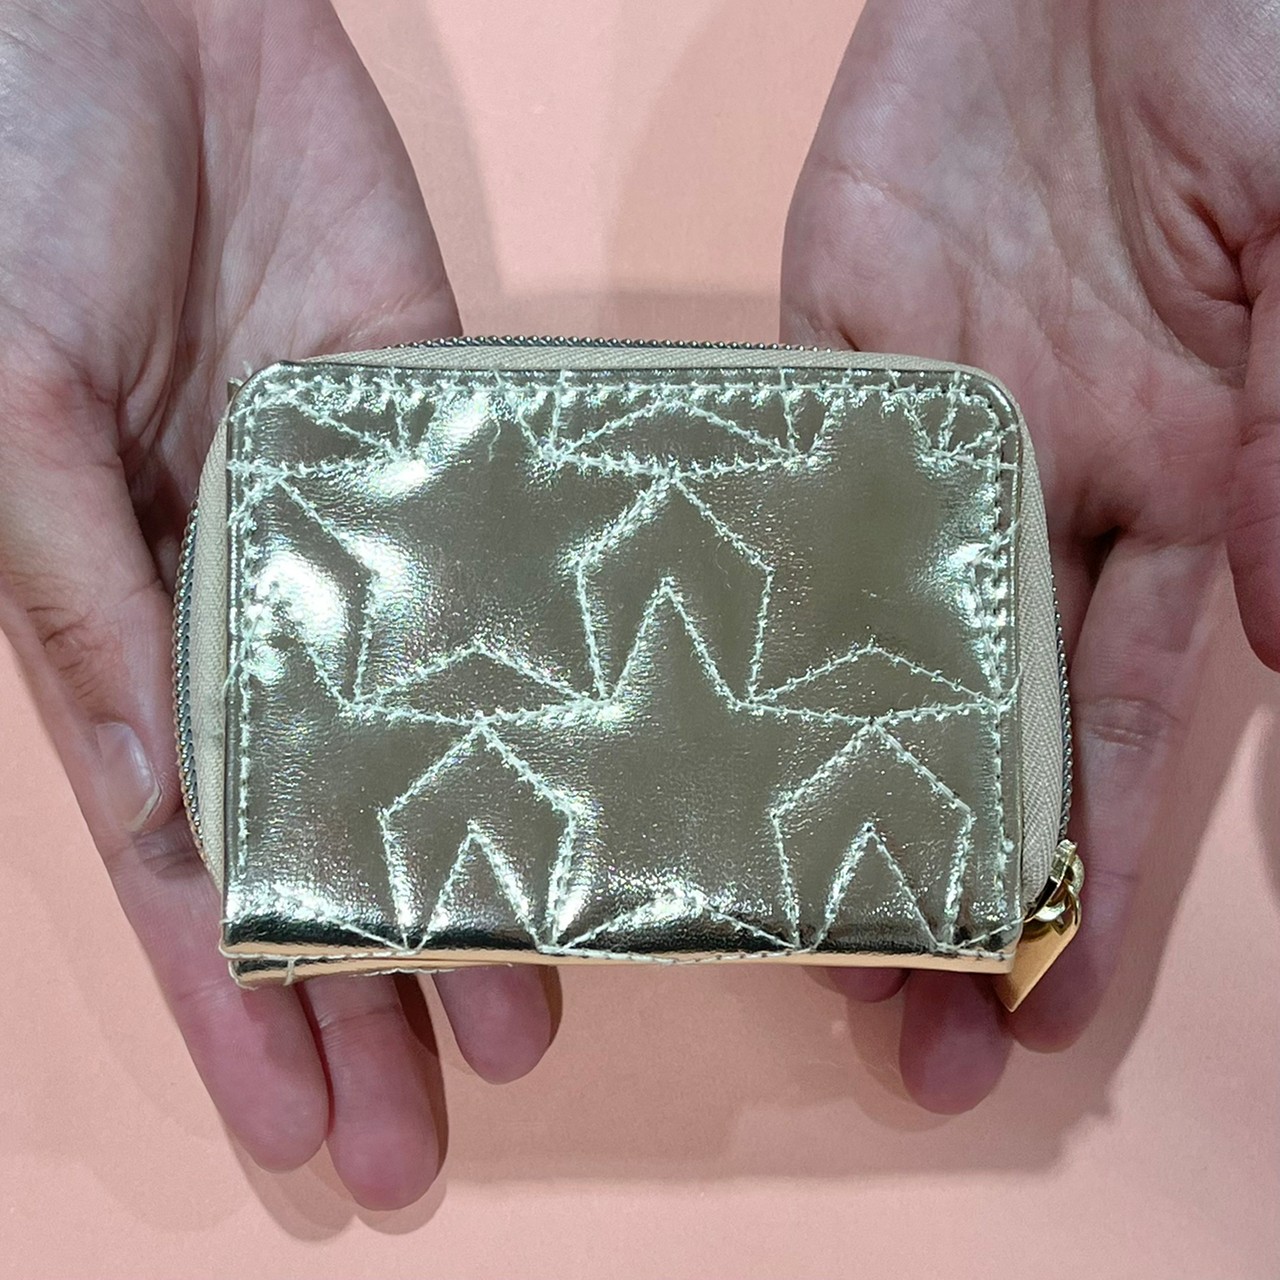 スターキルティングミニ財布を手に持っている画像